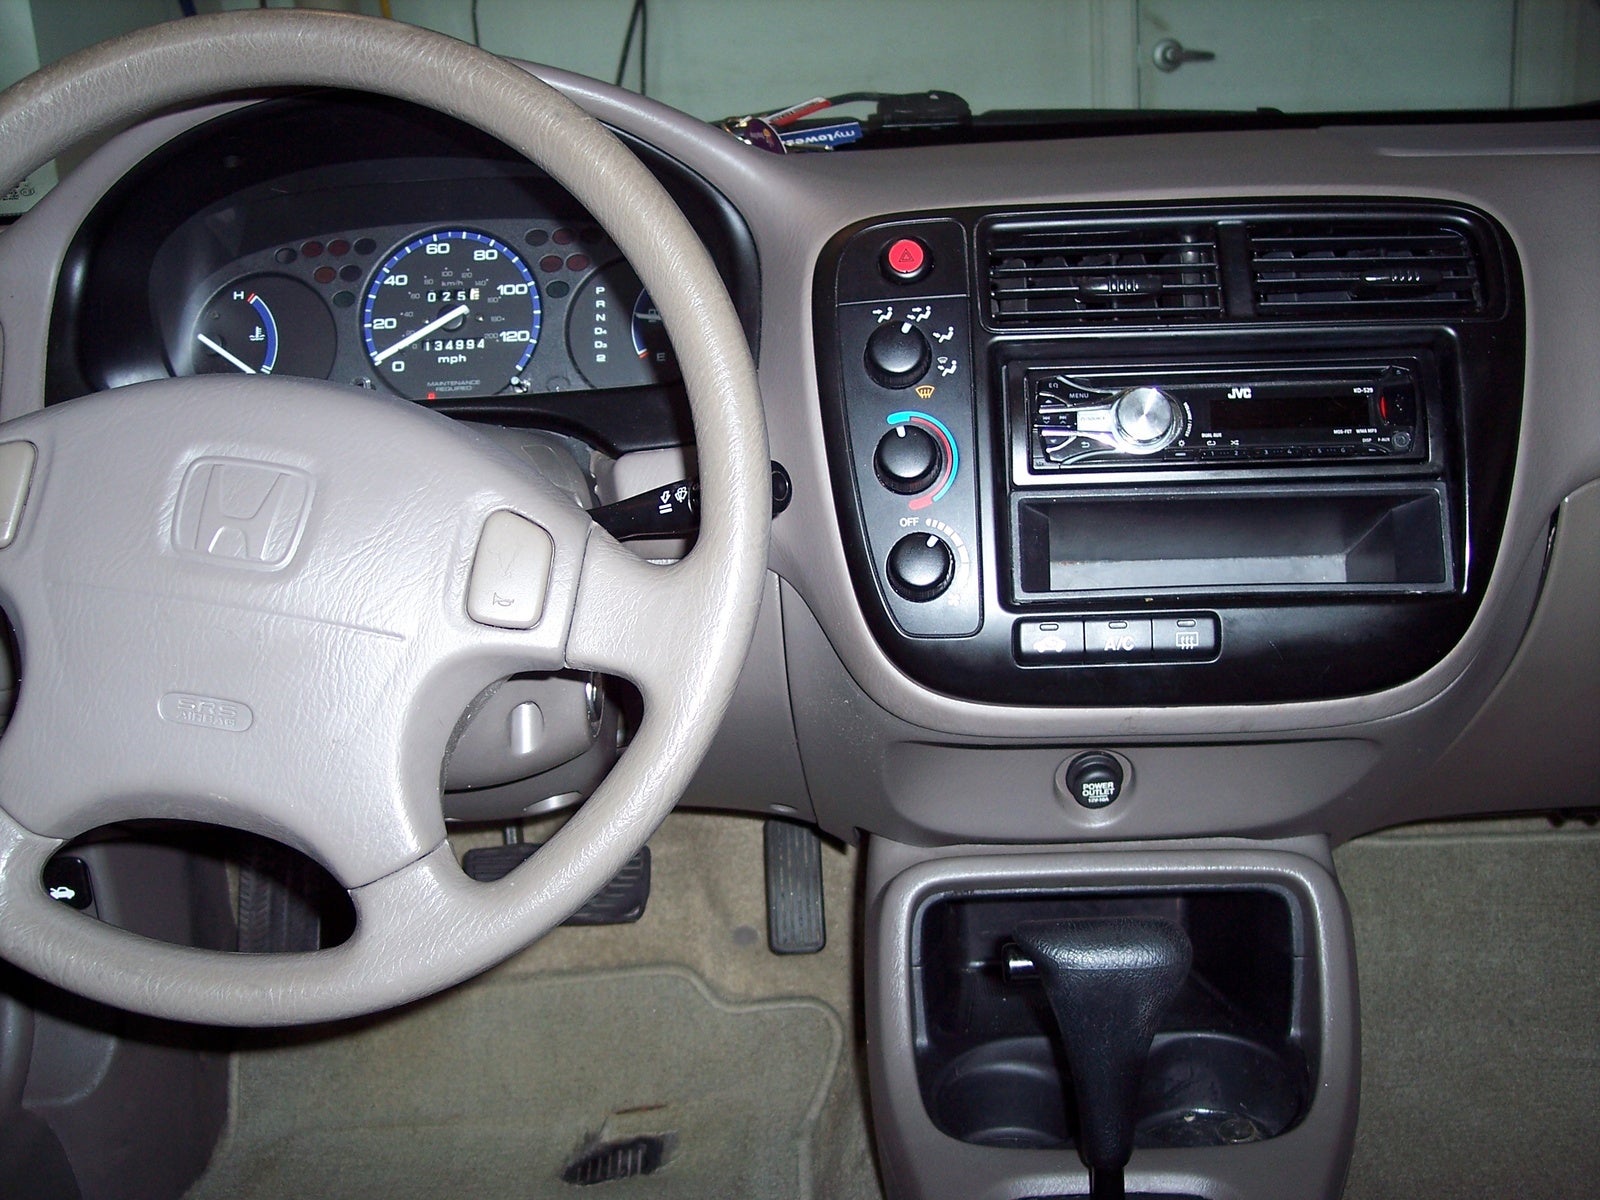 2000 Honda Civic - Interior Pictures - CarGurus
 Honda Civic 2000 Modified Interior